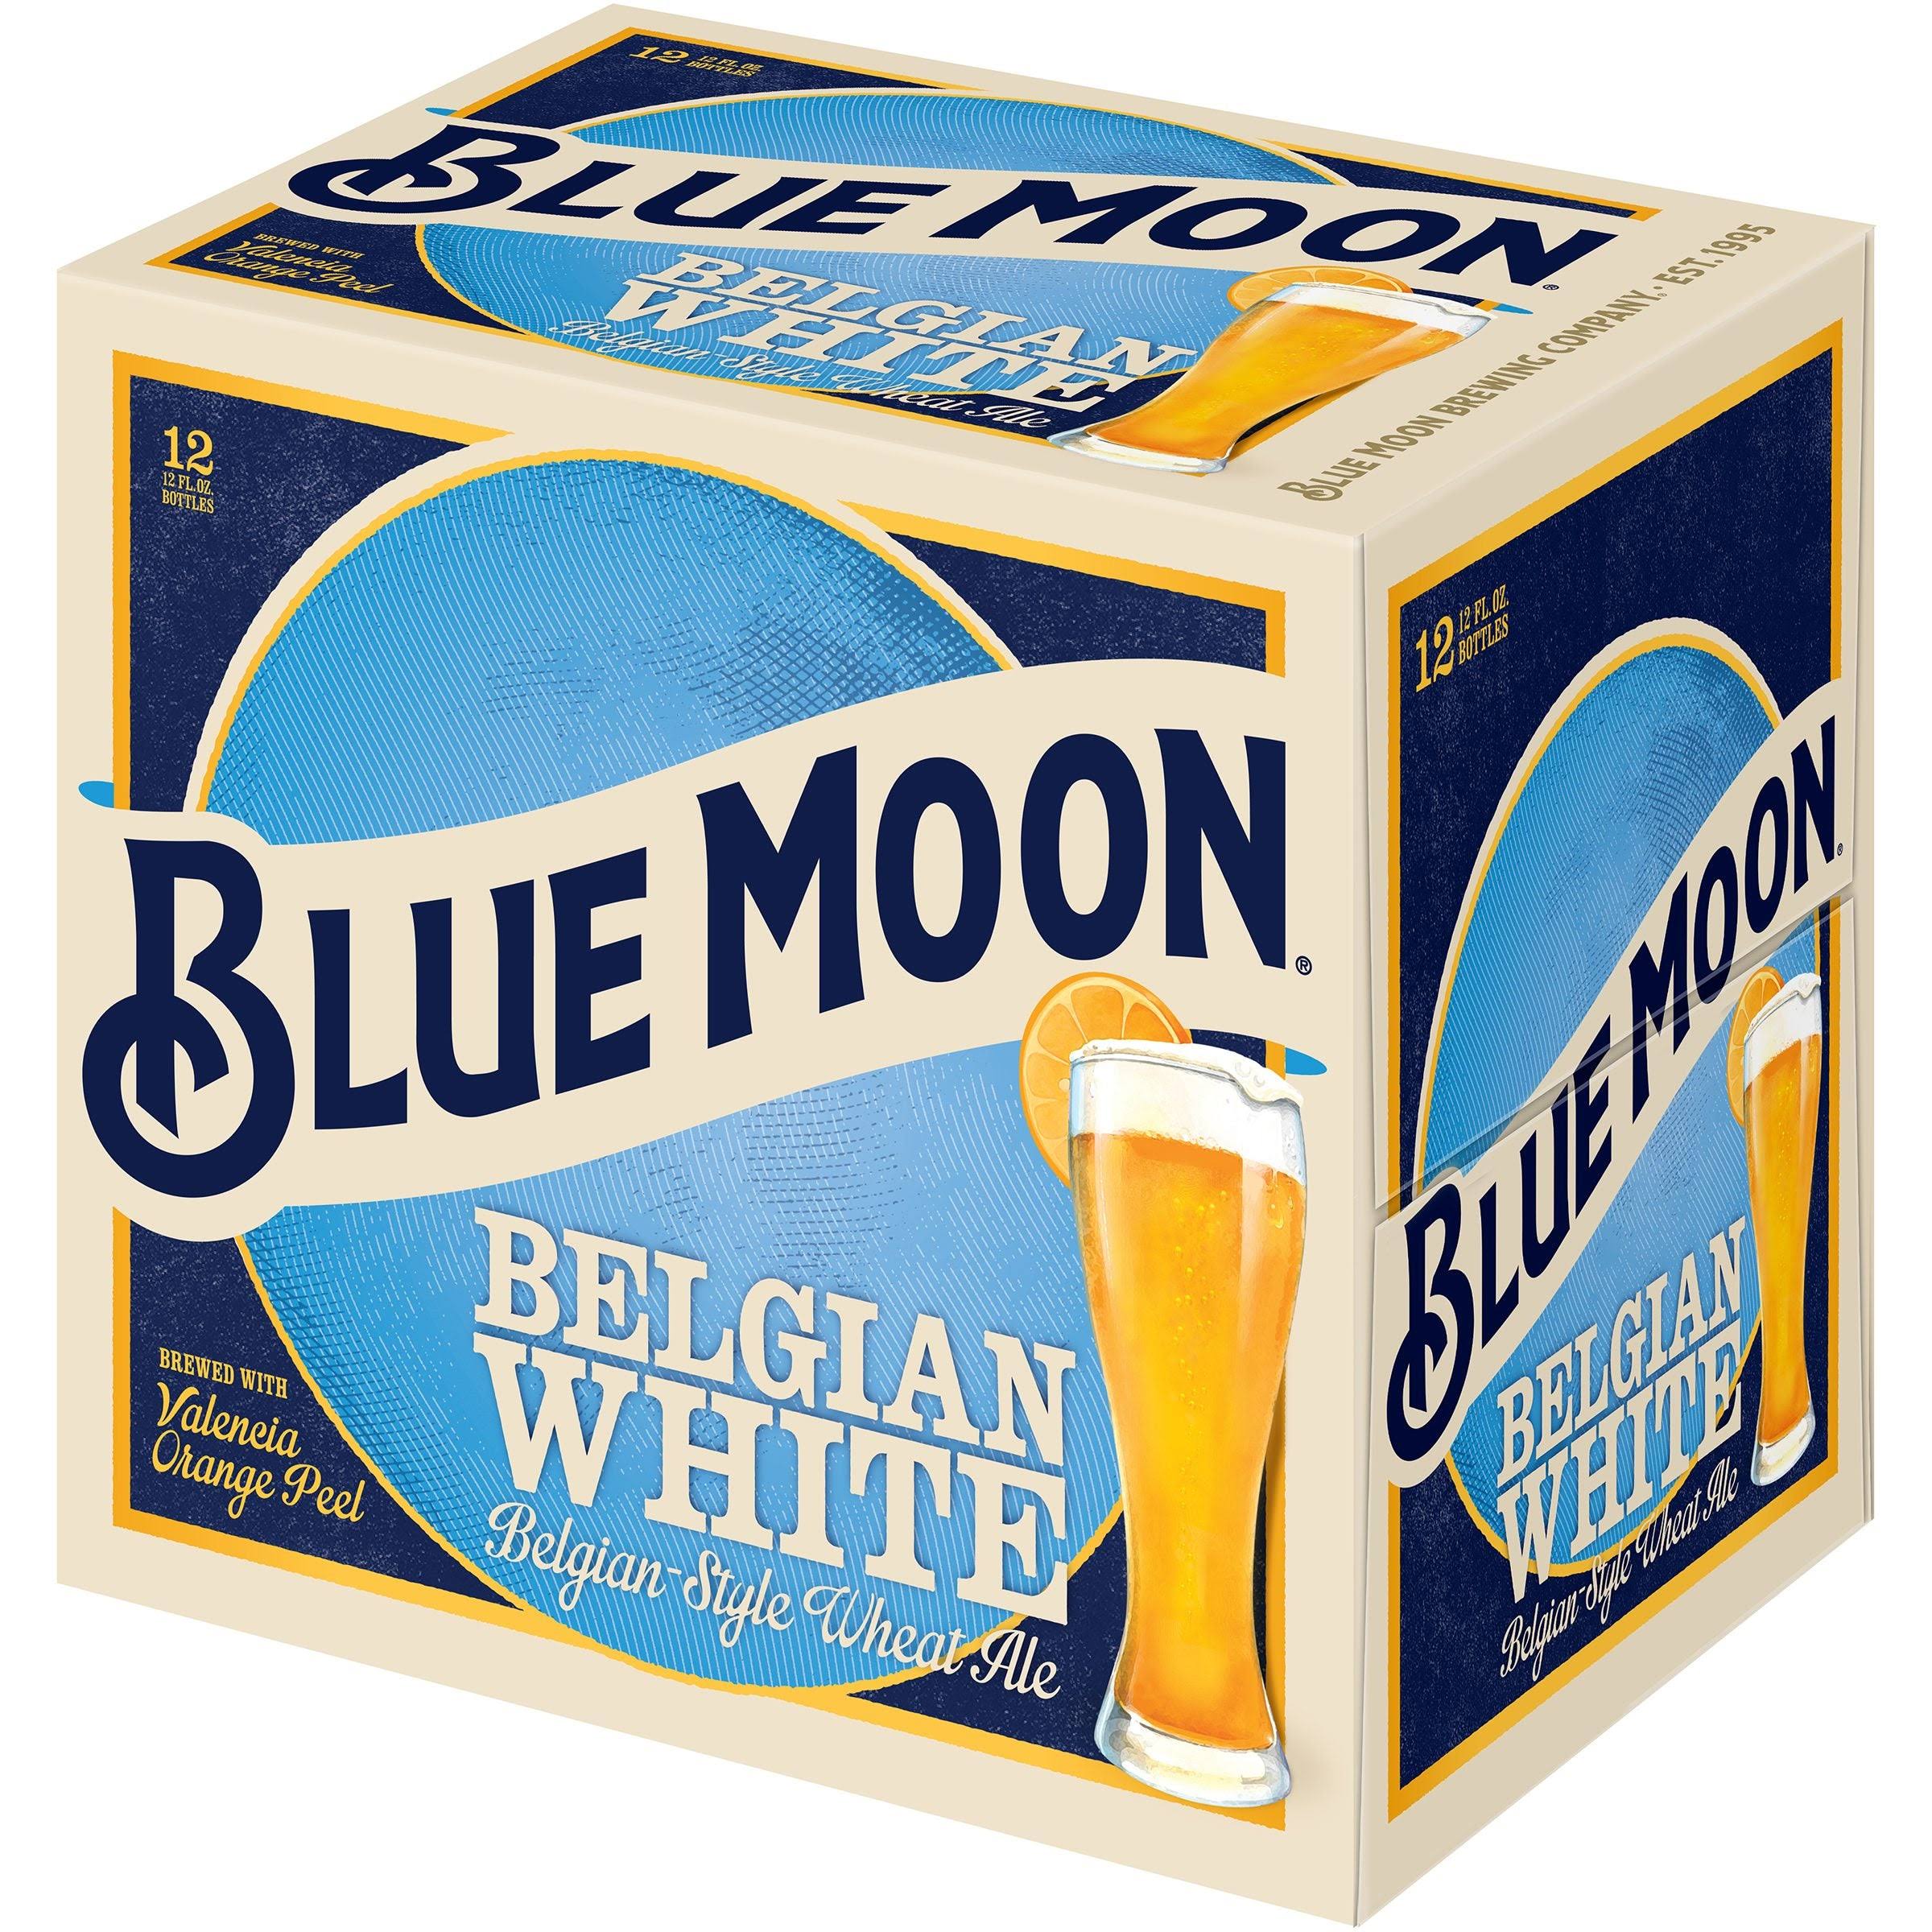 Blue Moon Beer, Belgian White - 12 pack, 12 fl oz bottles